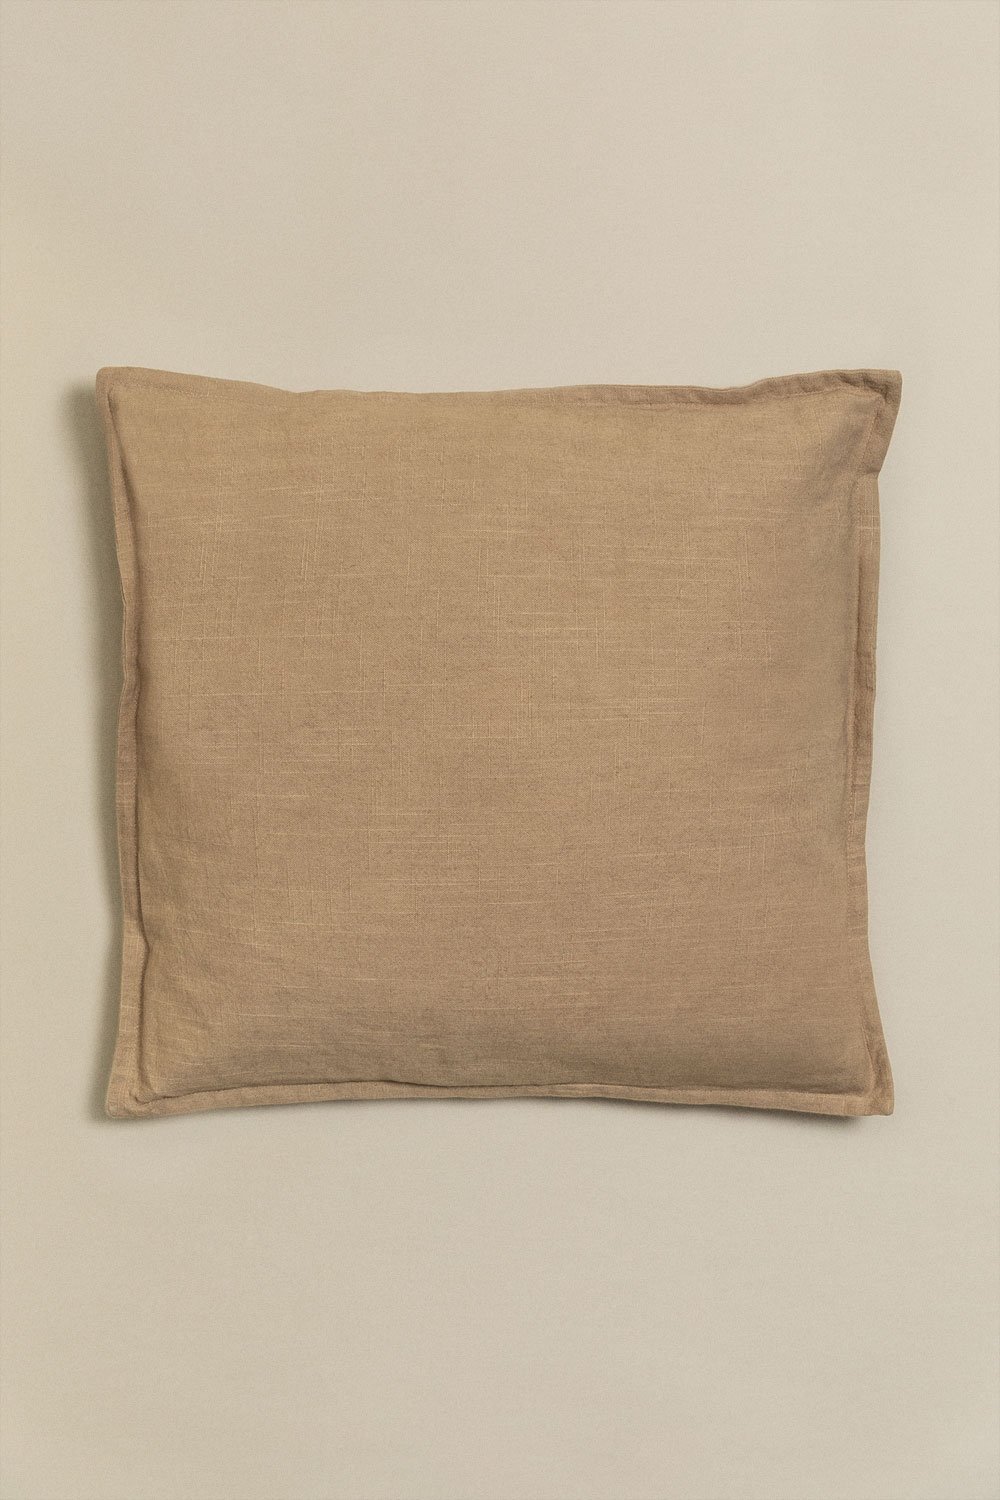 Coussin carré en coton (45x45 cm) Elezar, image de la galerie 1